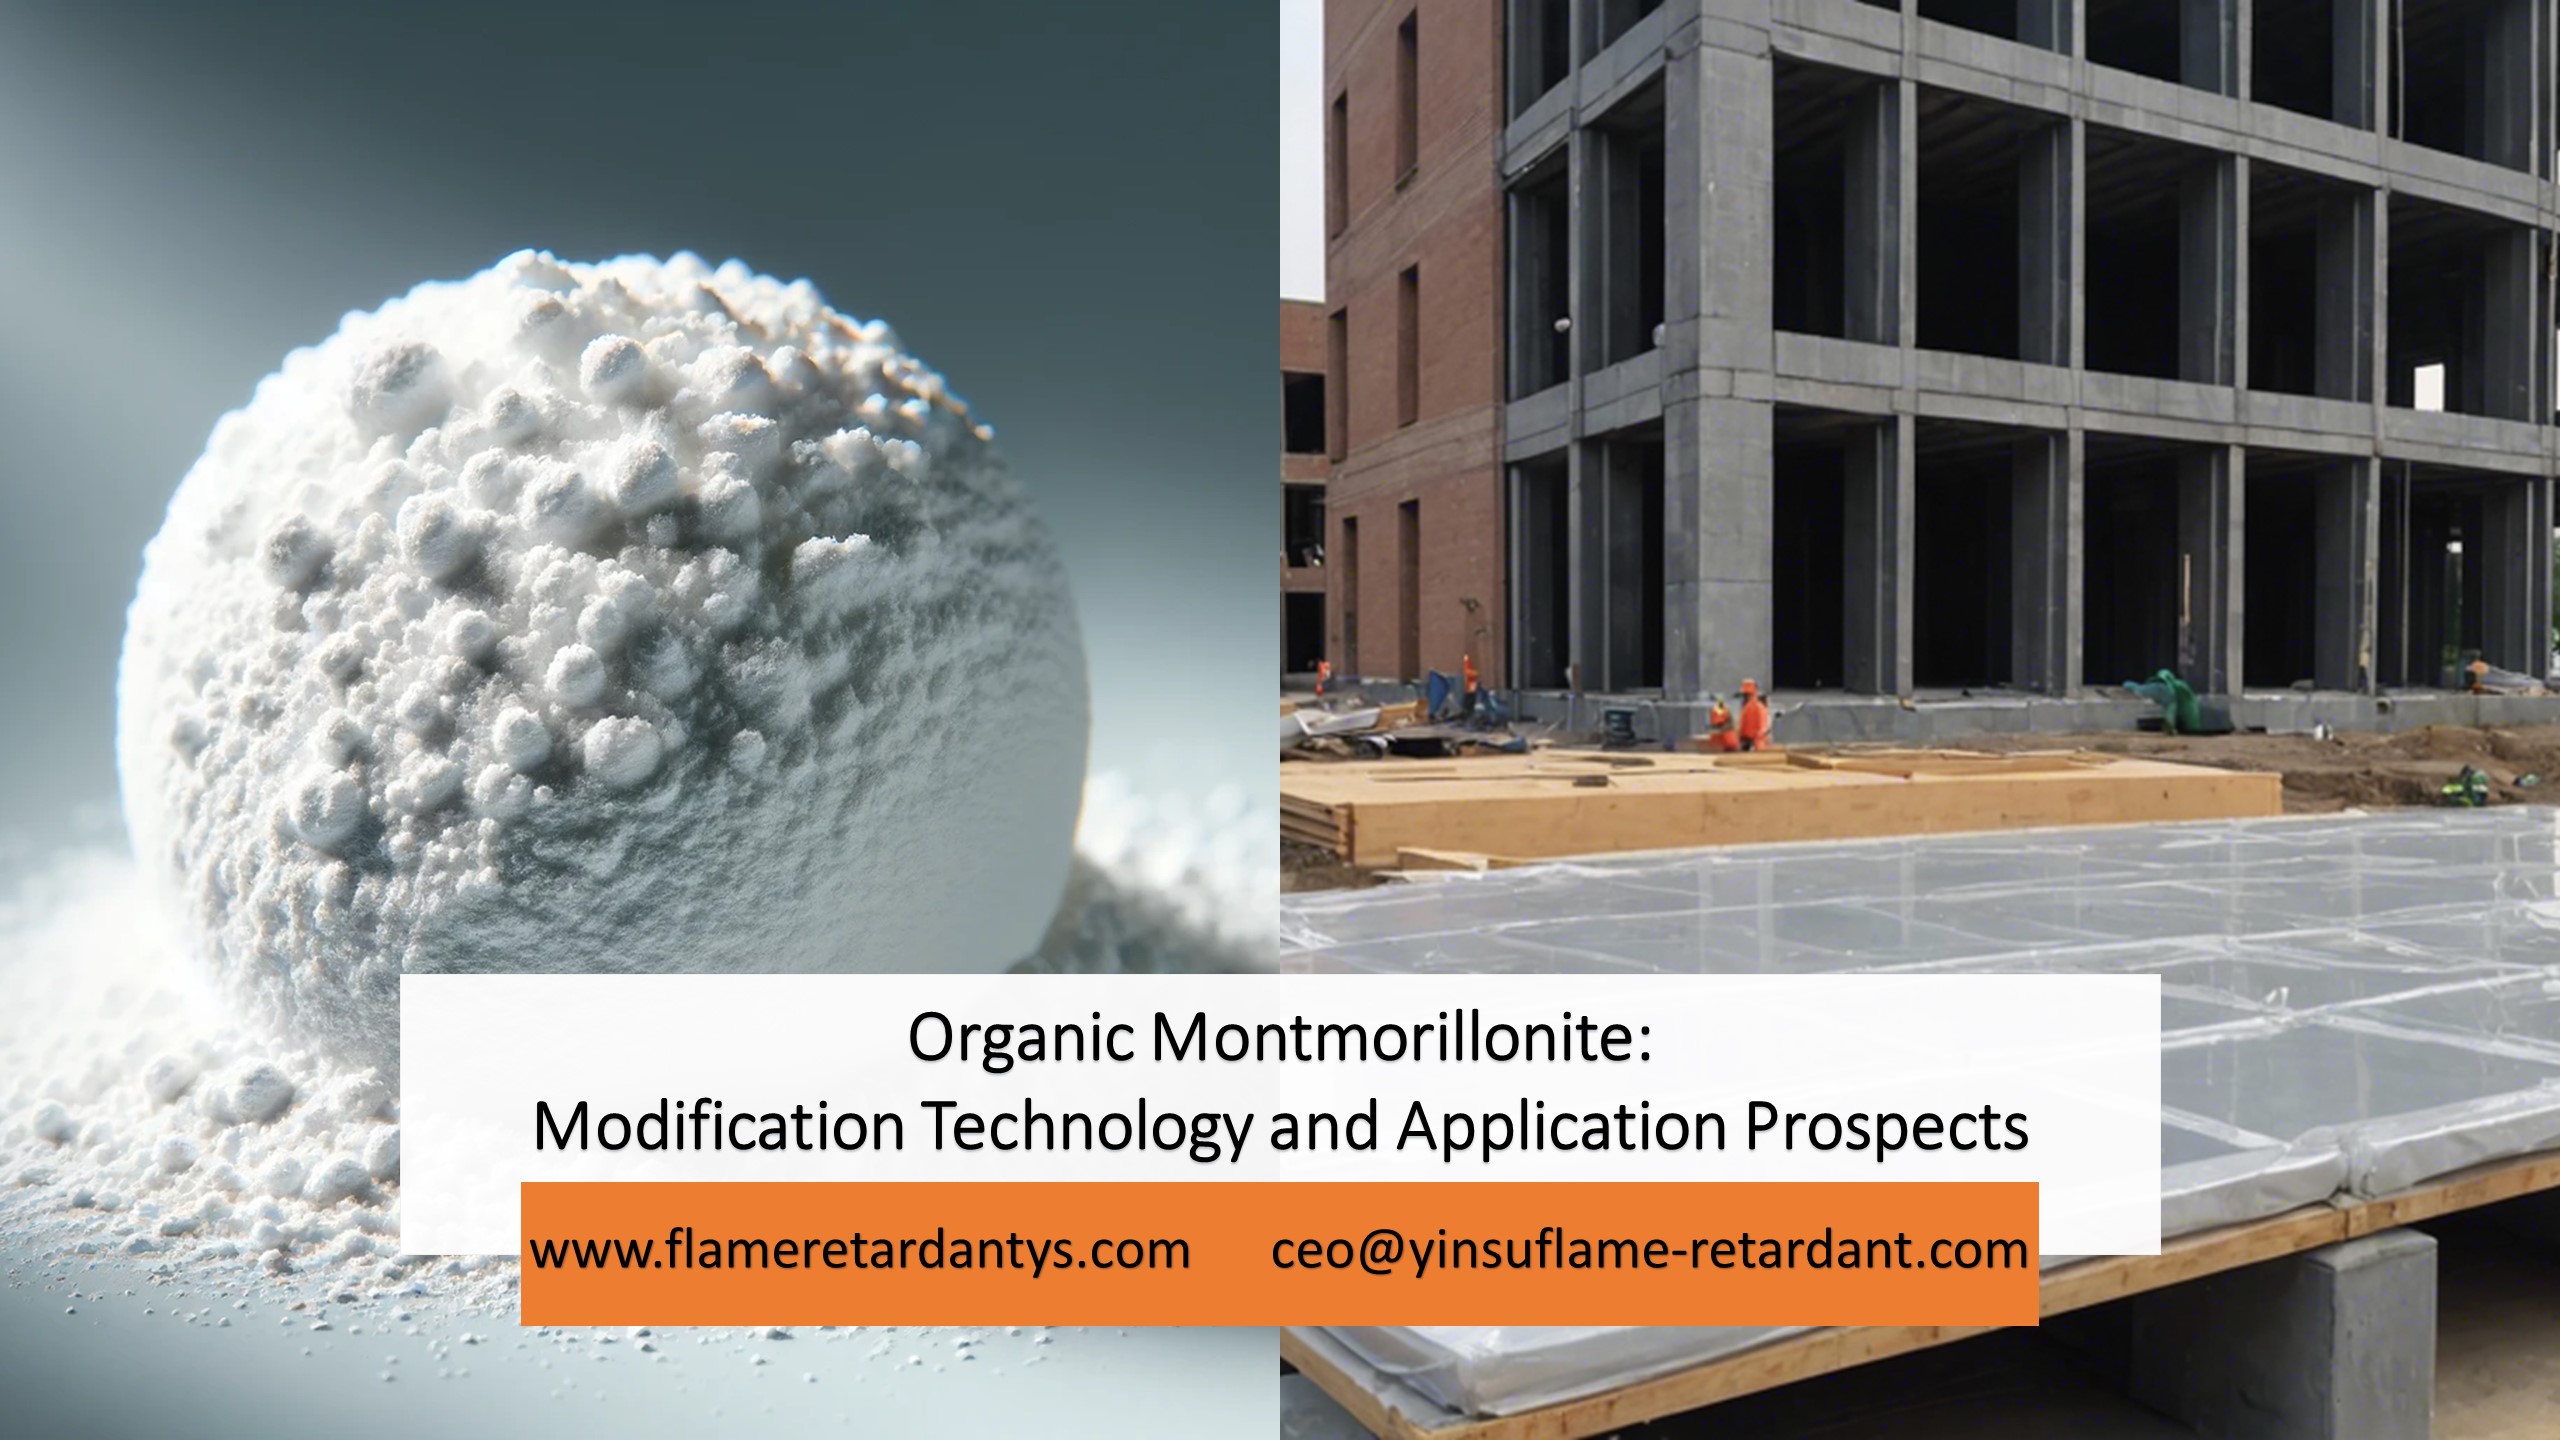 5.9 Tecnología de modificación de montmorillonita orgánica y perspectivas de aplicación